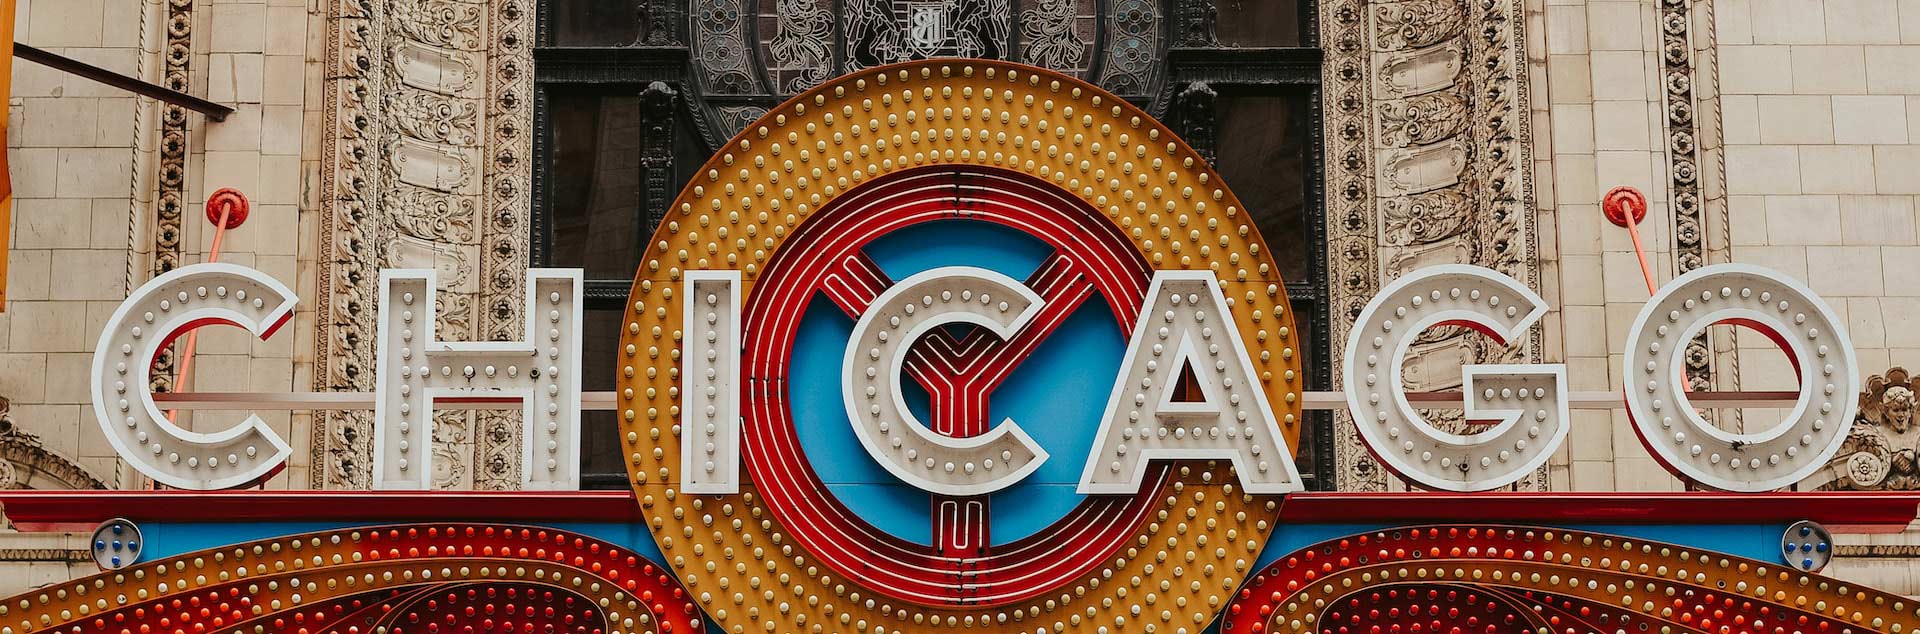 Cận cảnh biển hiệu Nhà hát Chicago